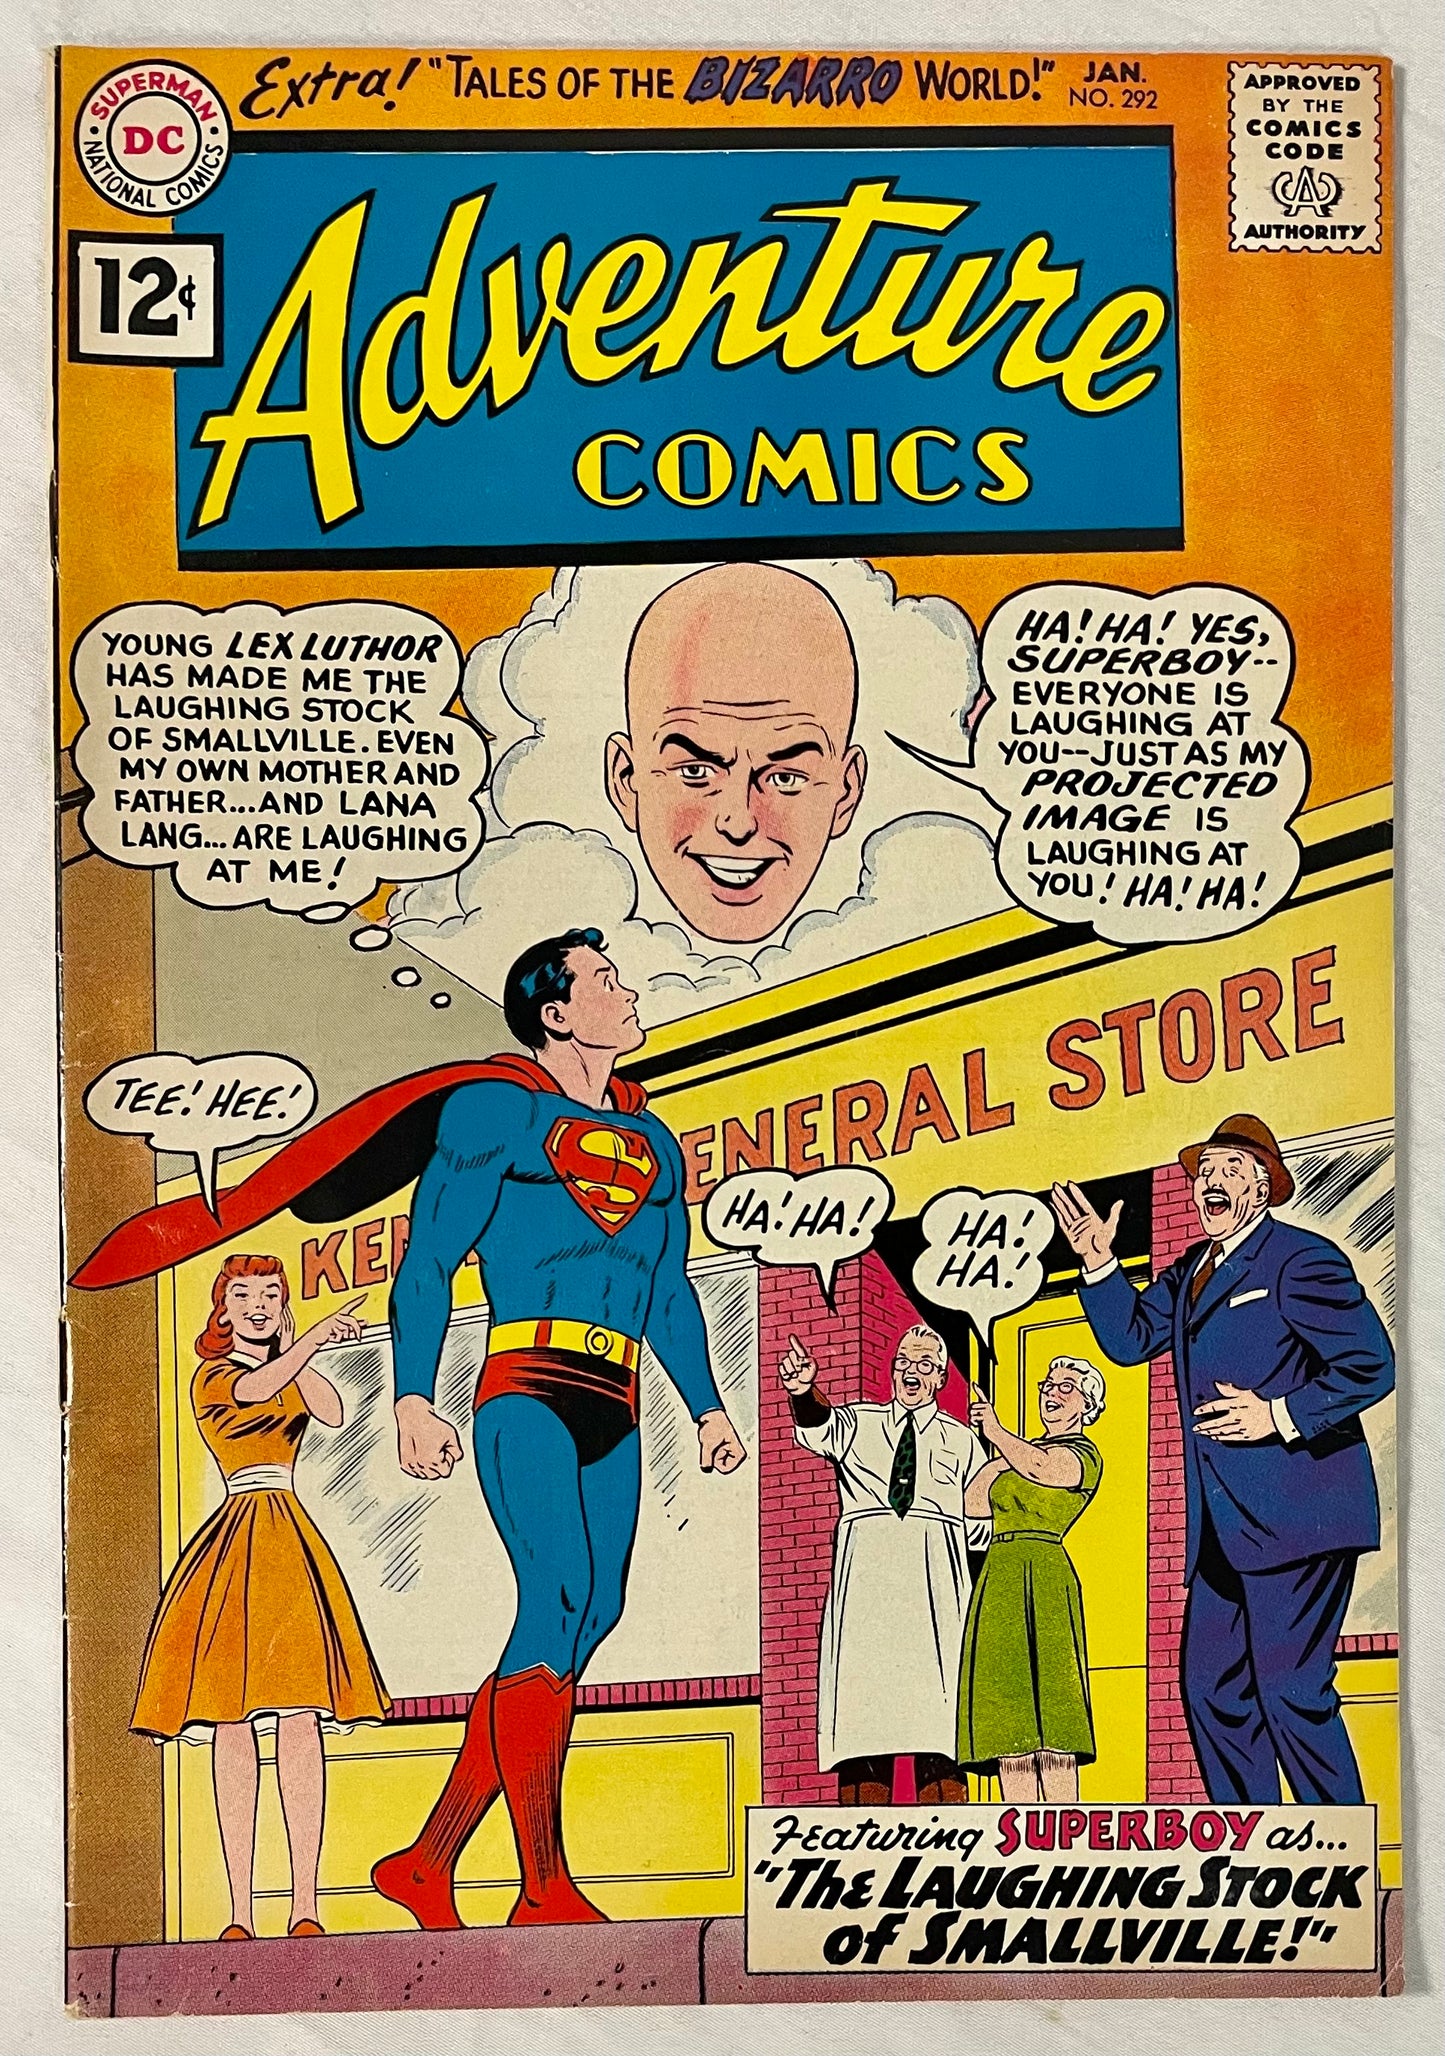 DC Comics Adventure Comics No. 292